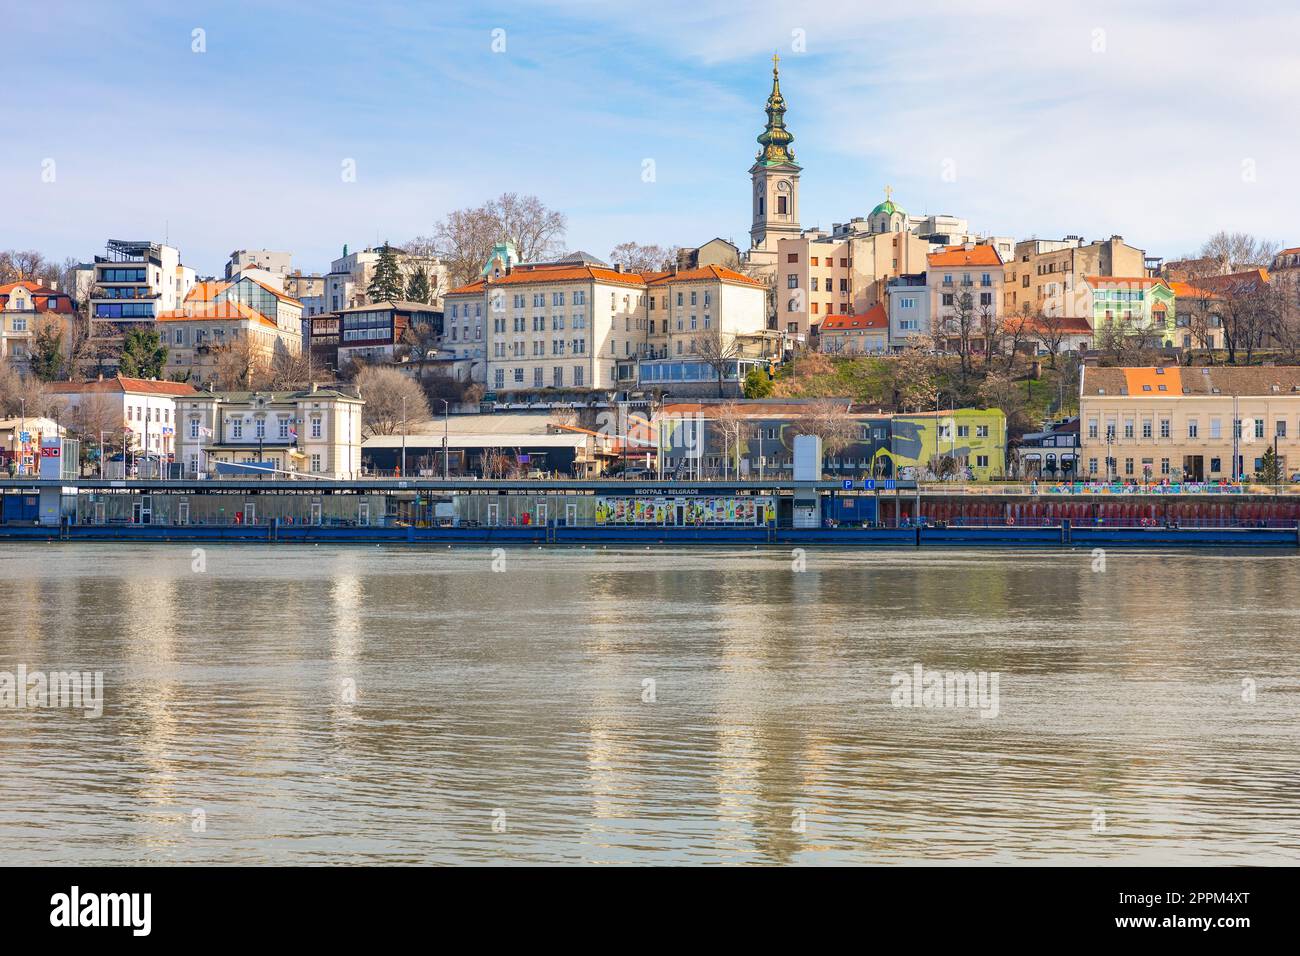 Schöne Aussicht auf das historische Zentrum von Belgrad am Ufer der Save, Serbien Stockfoto